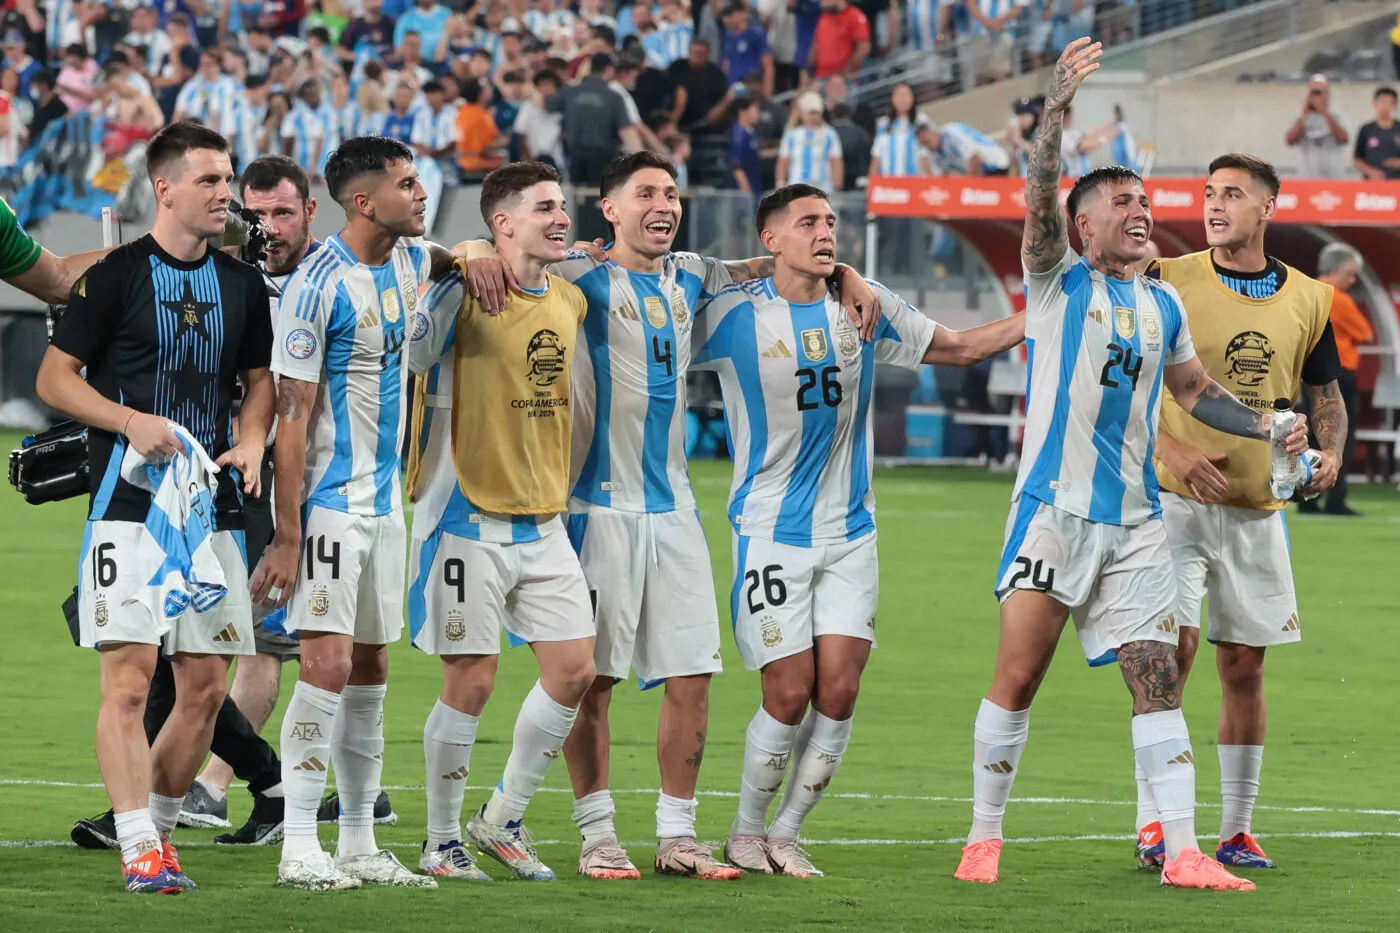 Des joueurs argentins reprennent un chant raciste visant les Bleus